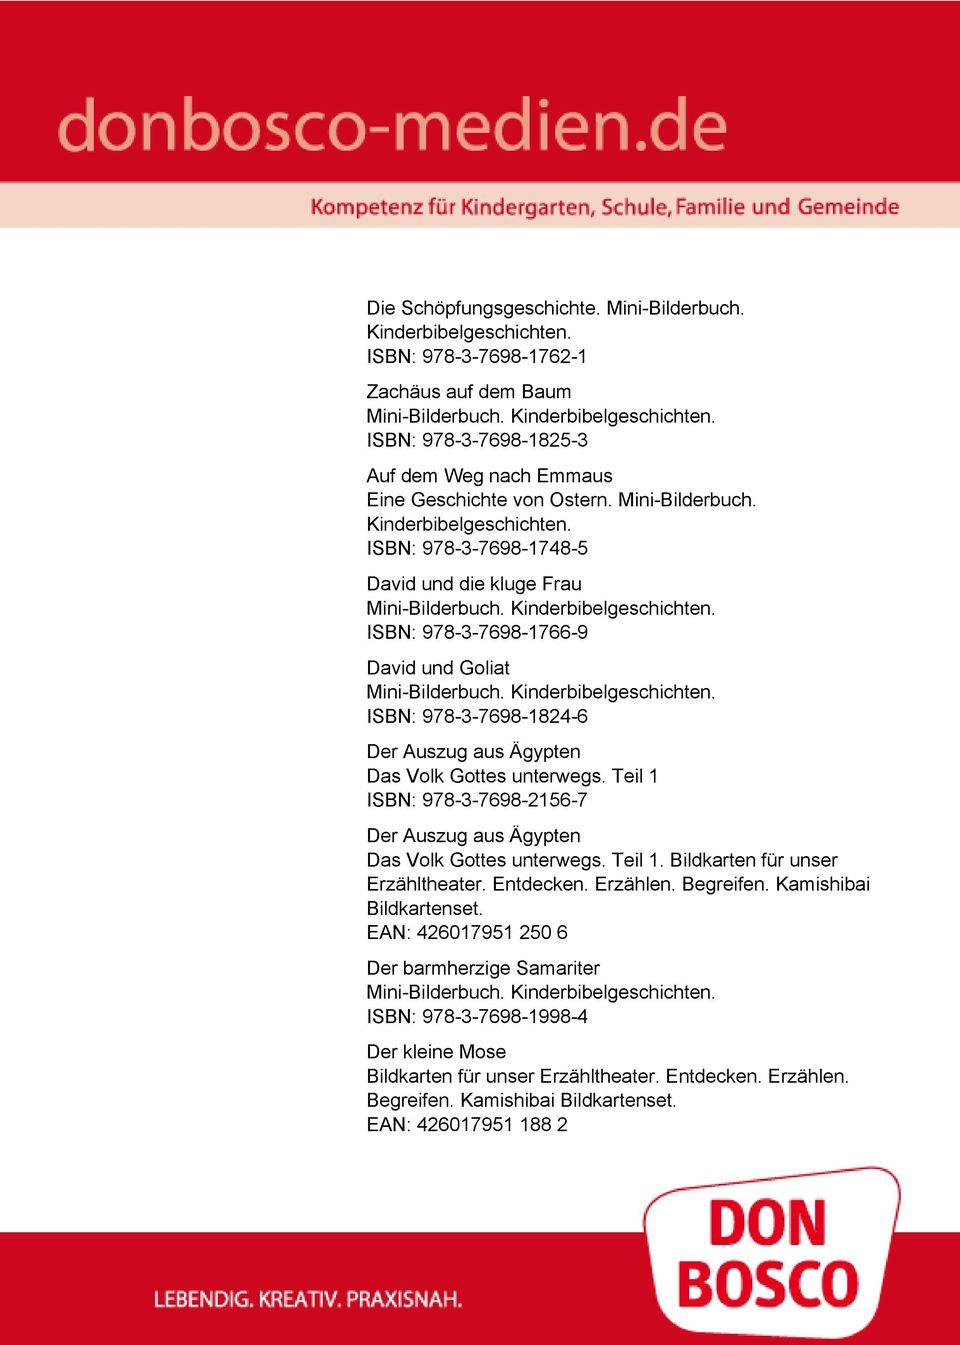 ISBN: 978-3-7698-1748-5 David und die kluge Frau ISBN: 978-3-7698-1766-9 David und Goliat ISBN: 978-3-7698-1824-6 Der Auszug aus Ägypten Das Volk Gottes unterwegs.